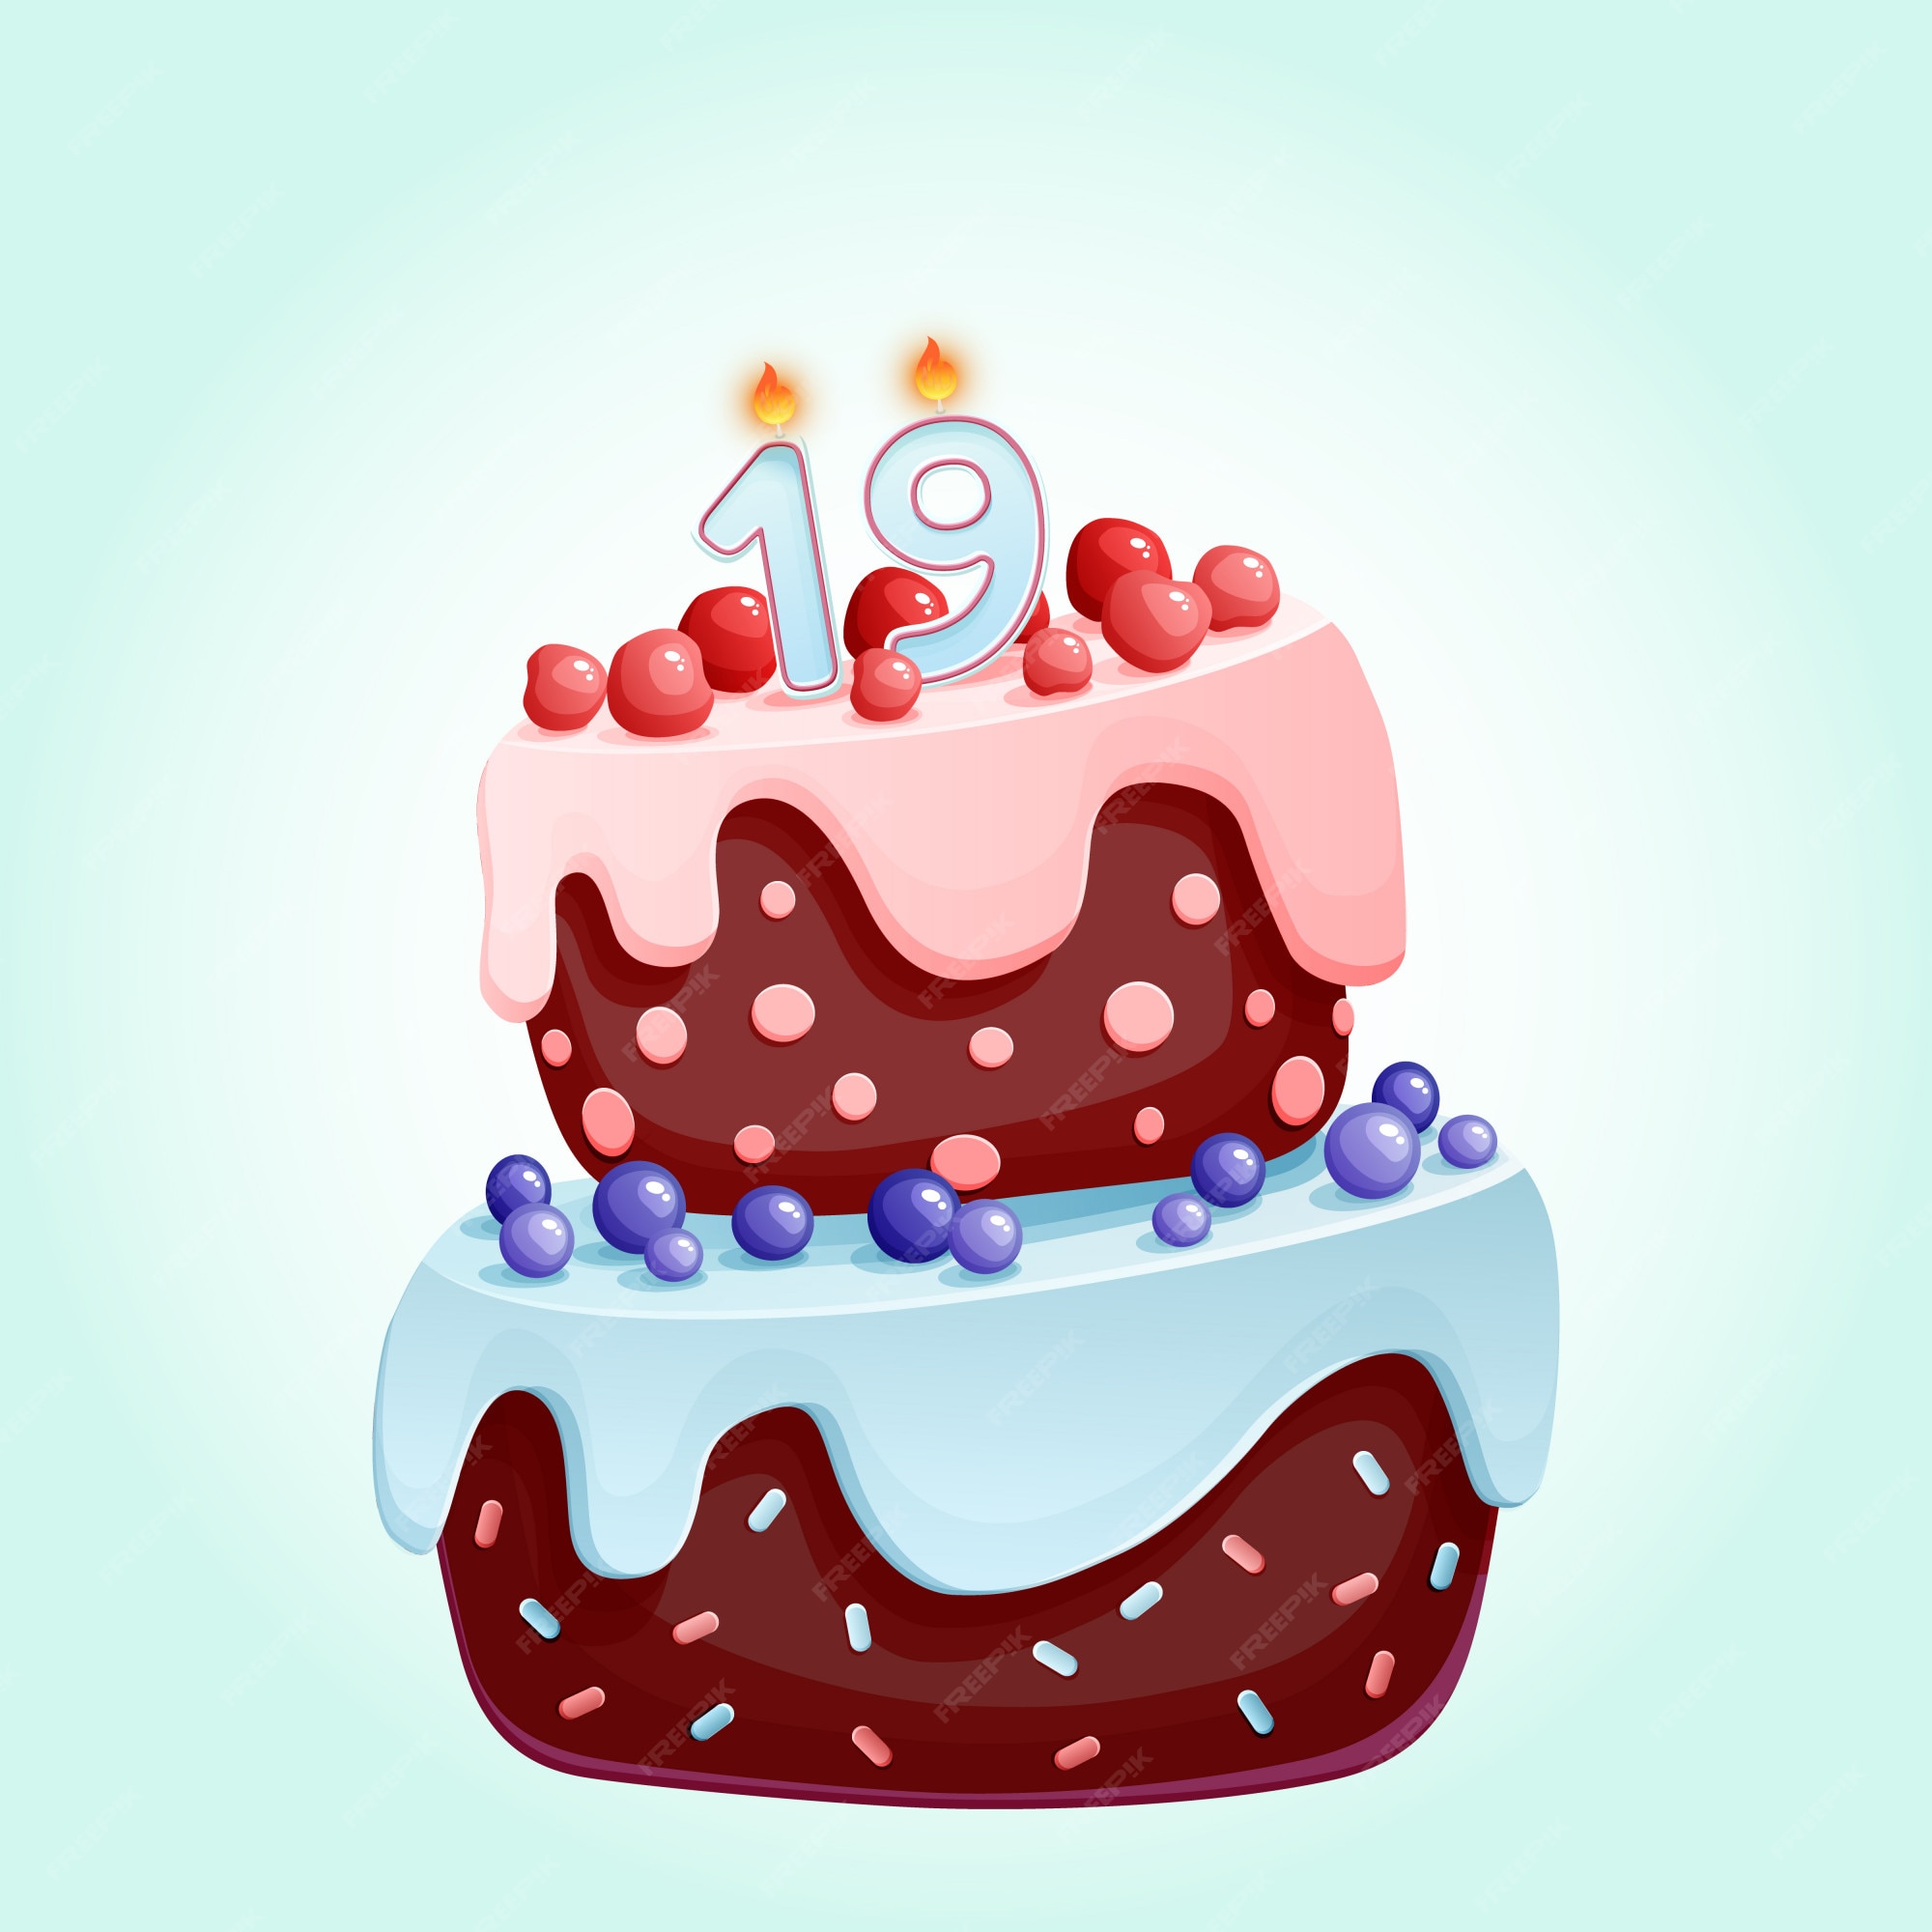 velas de aniversário com números seis e fogo. ícone colorido para  comemoração de aniversário ou festa. luz de velas de férias com cera e vela  de desenho animado engraçado para bolo. ilustração